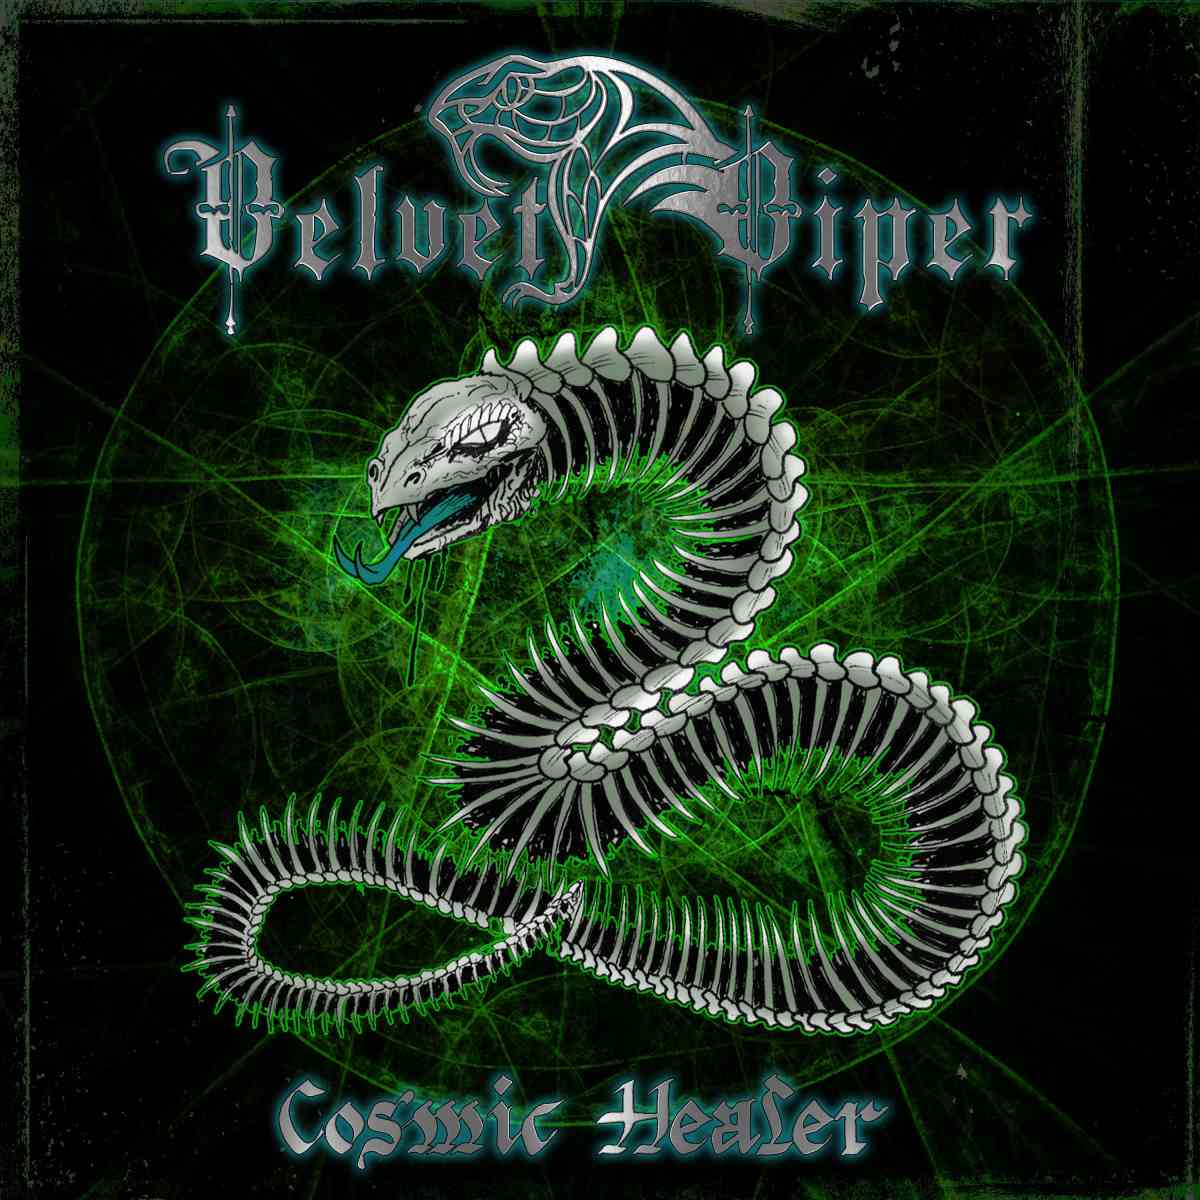 velvet viper - cosmic healer - album cover